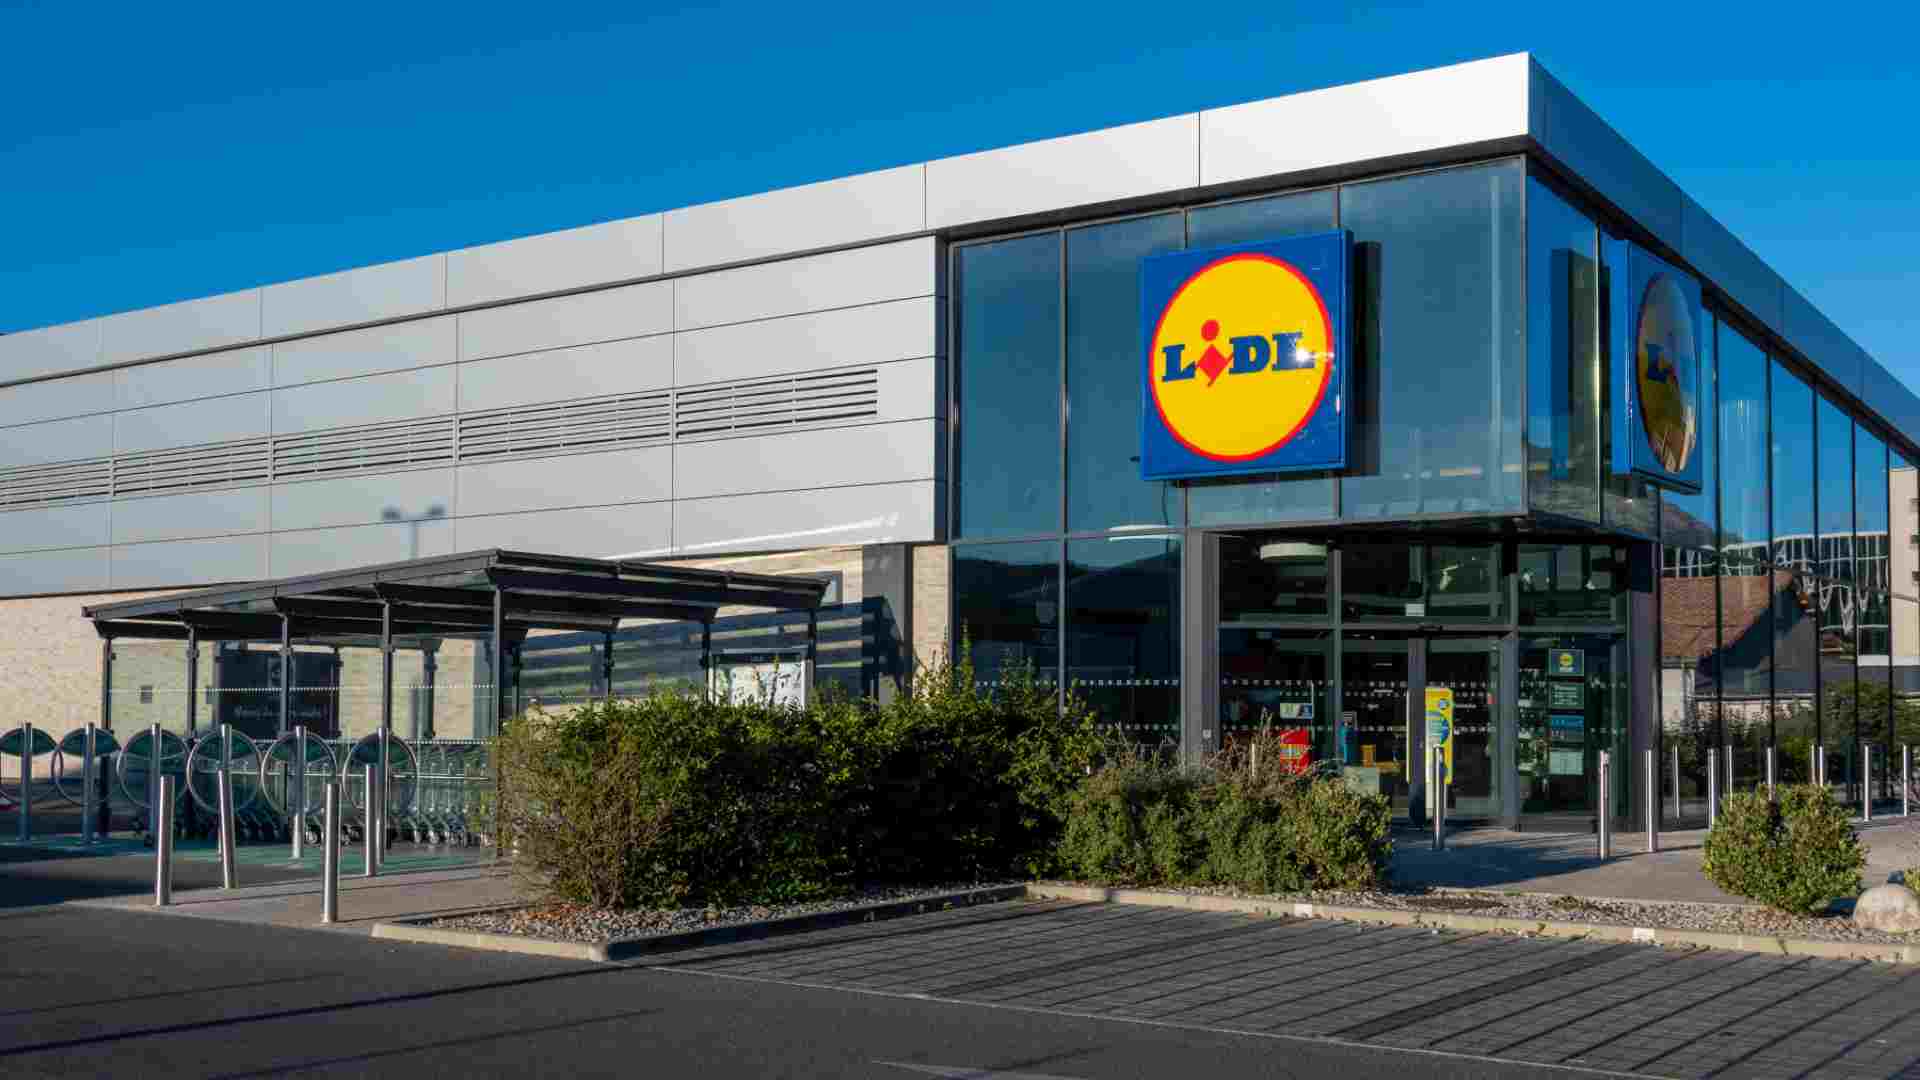 Lidl confirma su gran apuesta en España - nuevas tiendas disponible